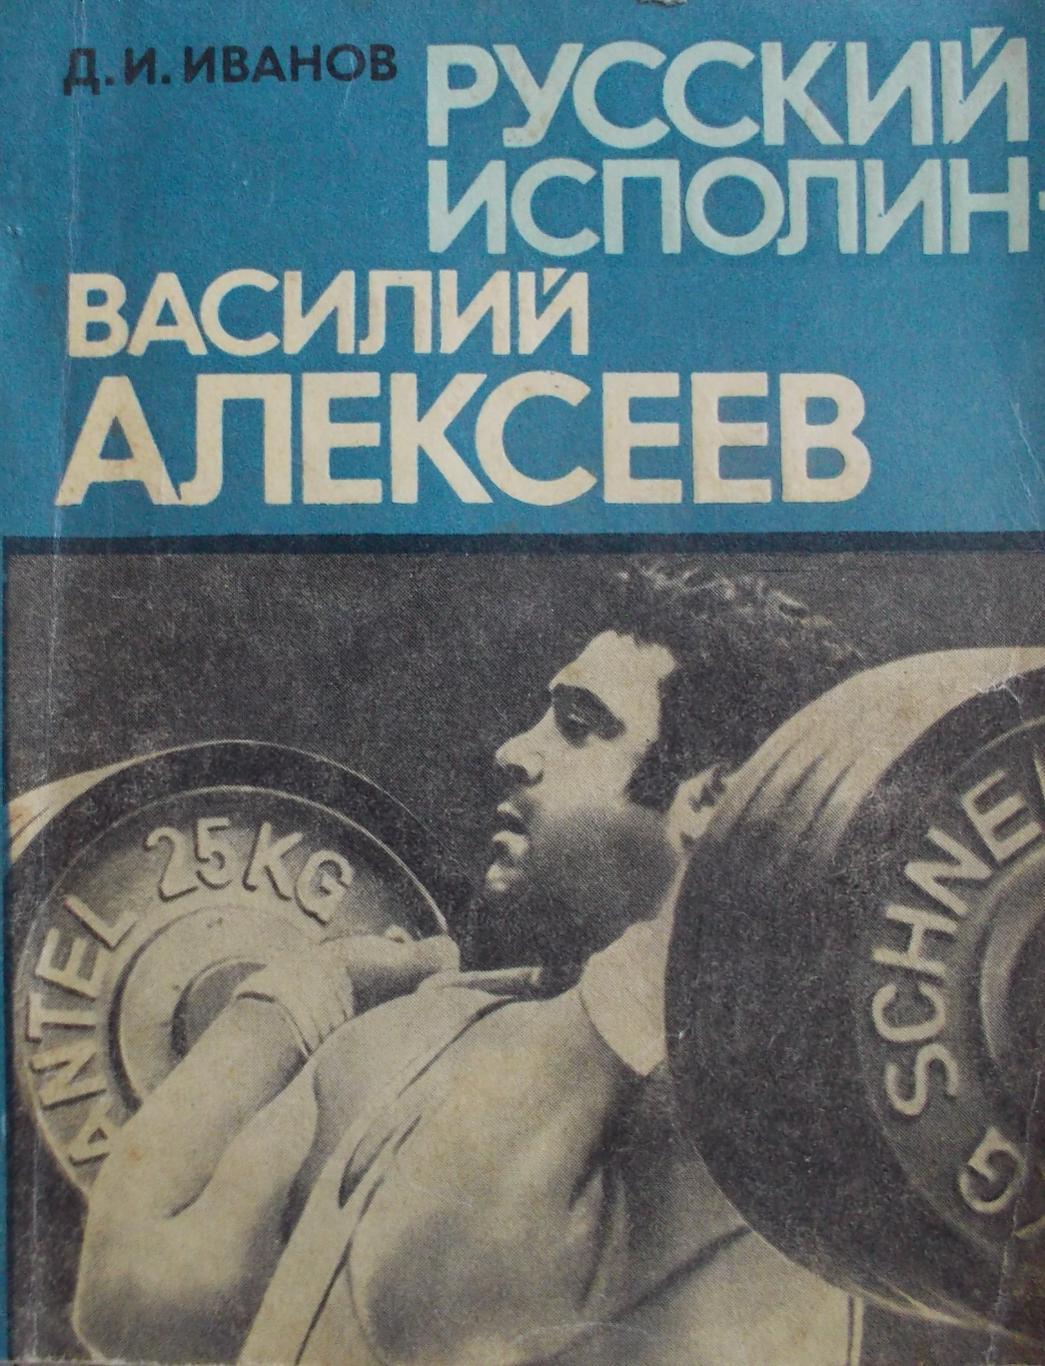 Дмитрий Иванов. Русский исполин - Василий Алексеев. 1980 год.